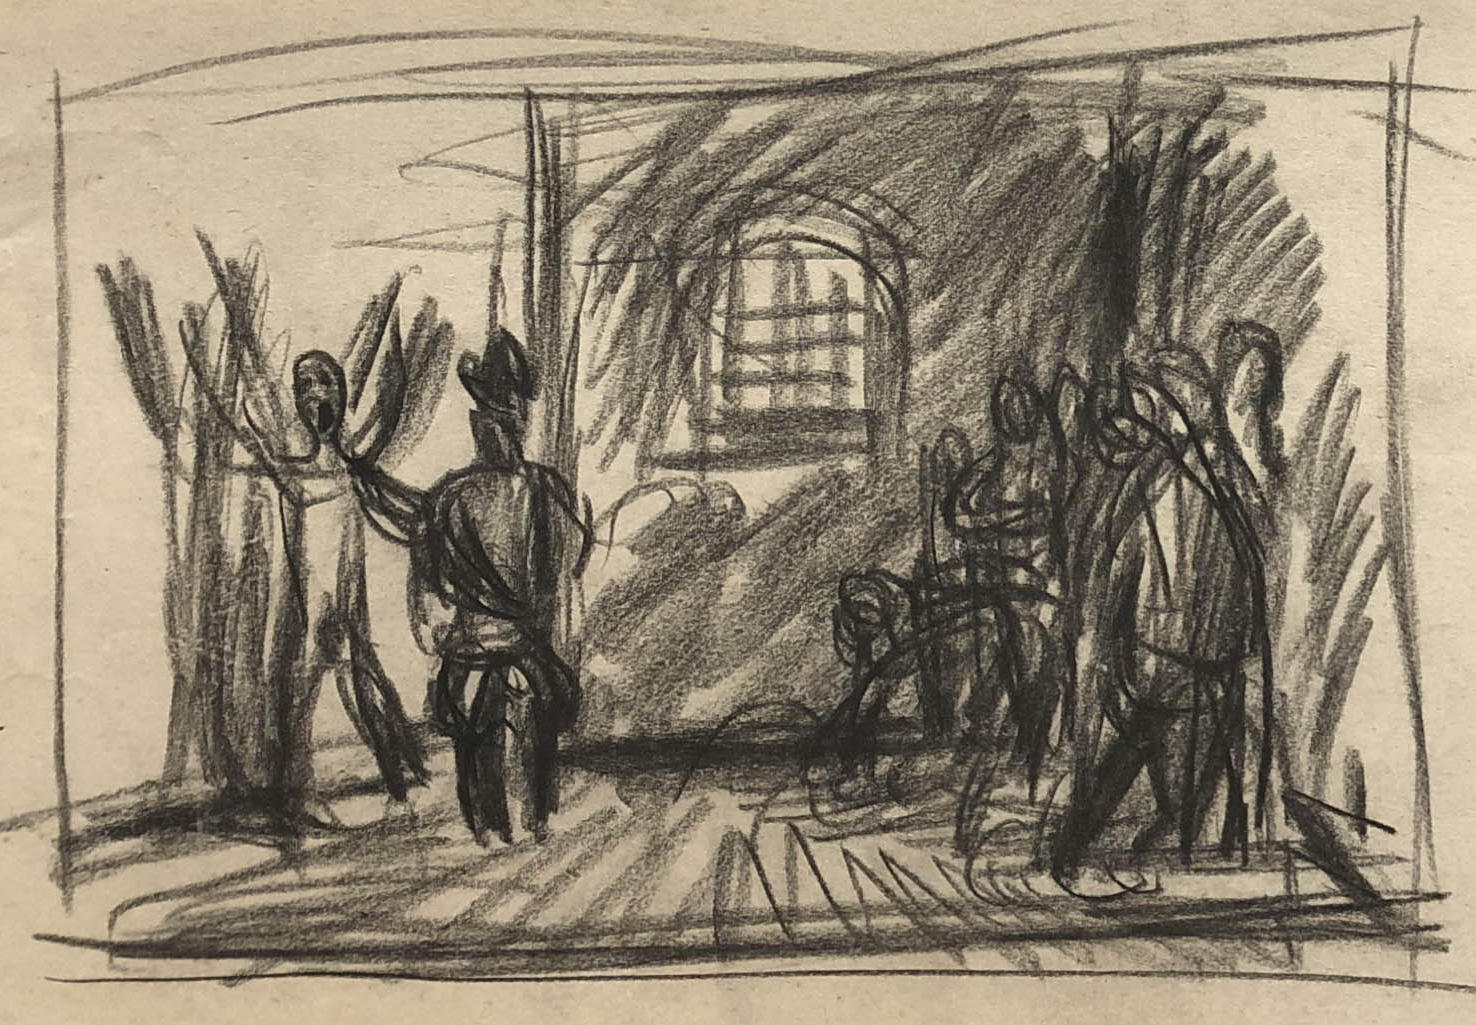 Rysunek ołówkiem. Cela więzienna po prawej stronie kilka postaci pod ścianą, po lewej osoba w mundurze i krzyczący mężczyzna.